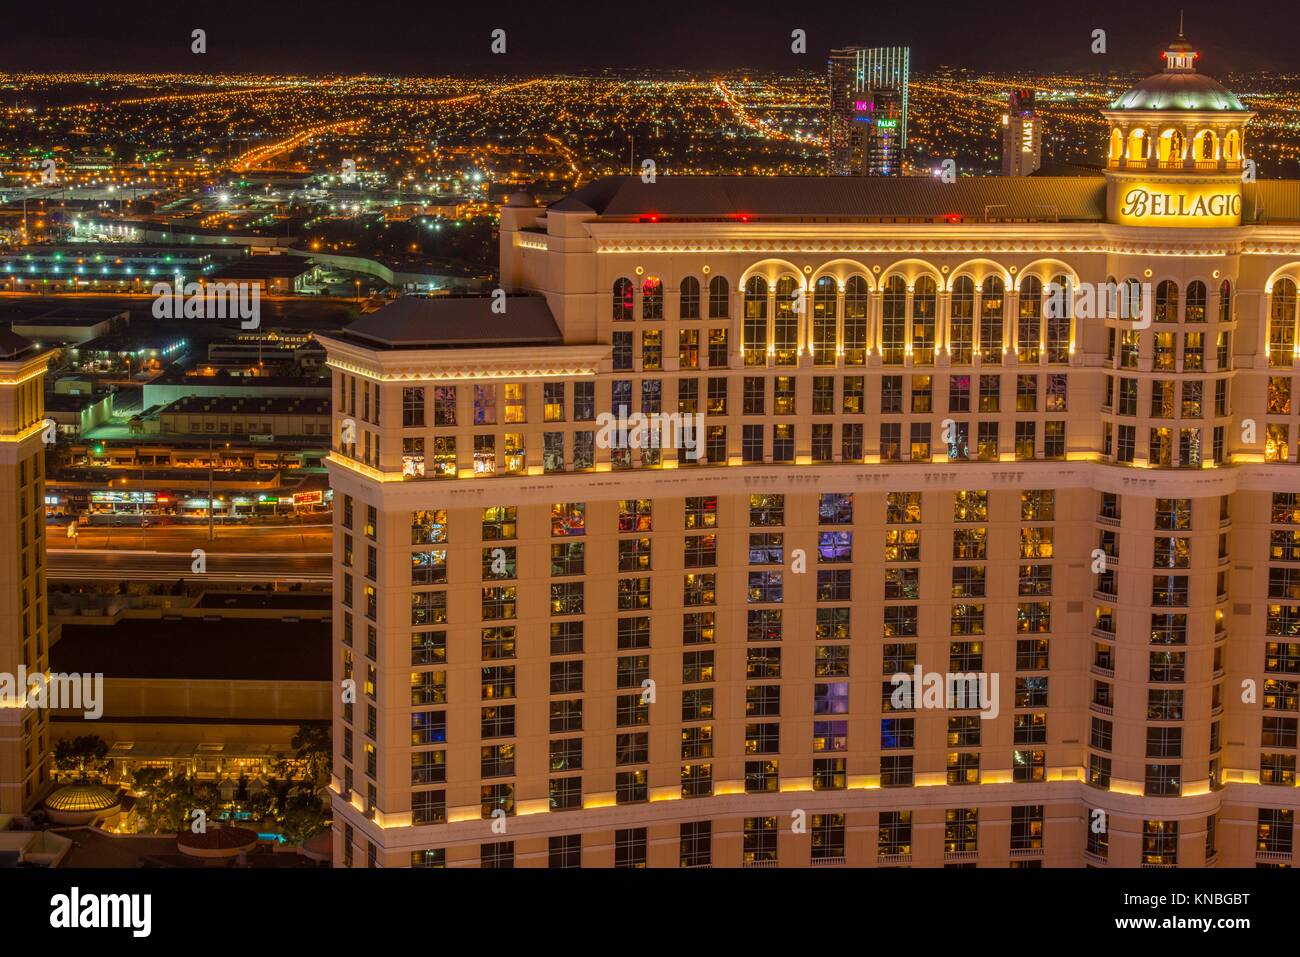 Las Vegas at night from the Paris Casino resort hotel Eiffel Tower, Las Vegas, Nevada, USA. Stock Photo